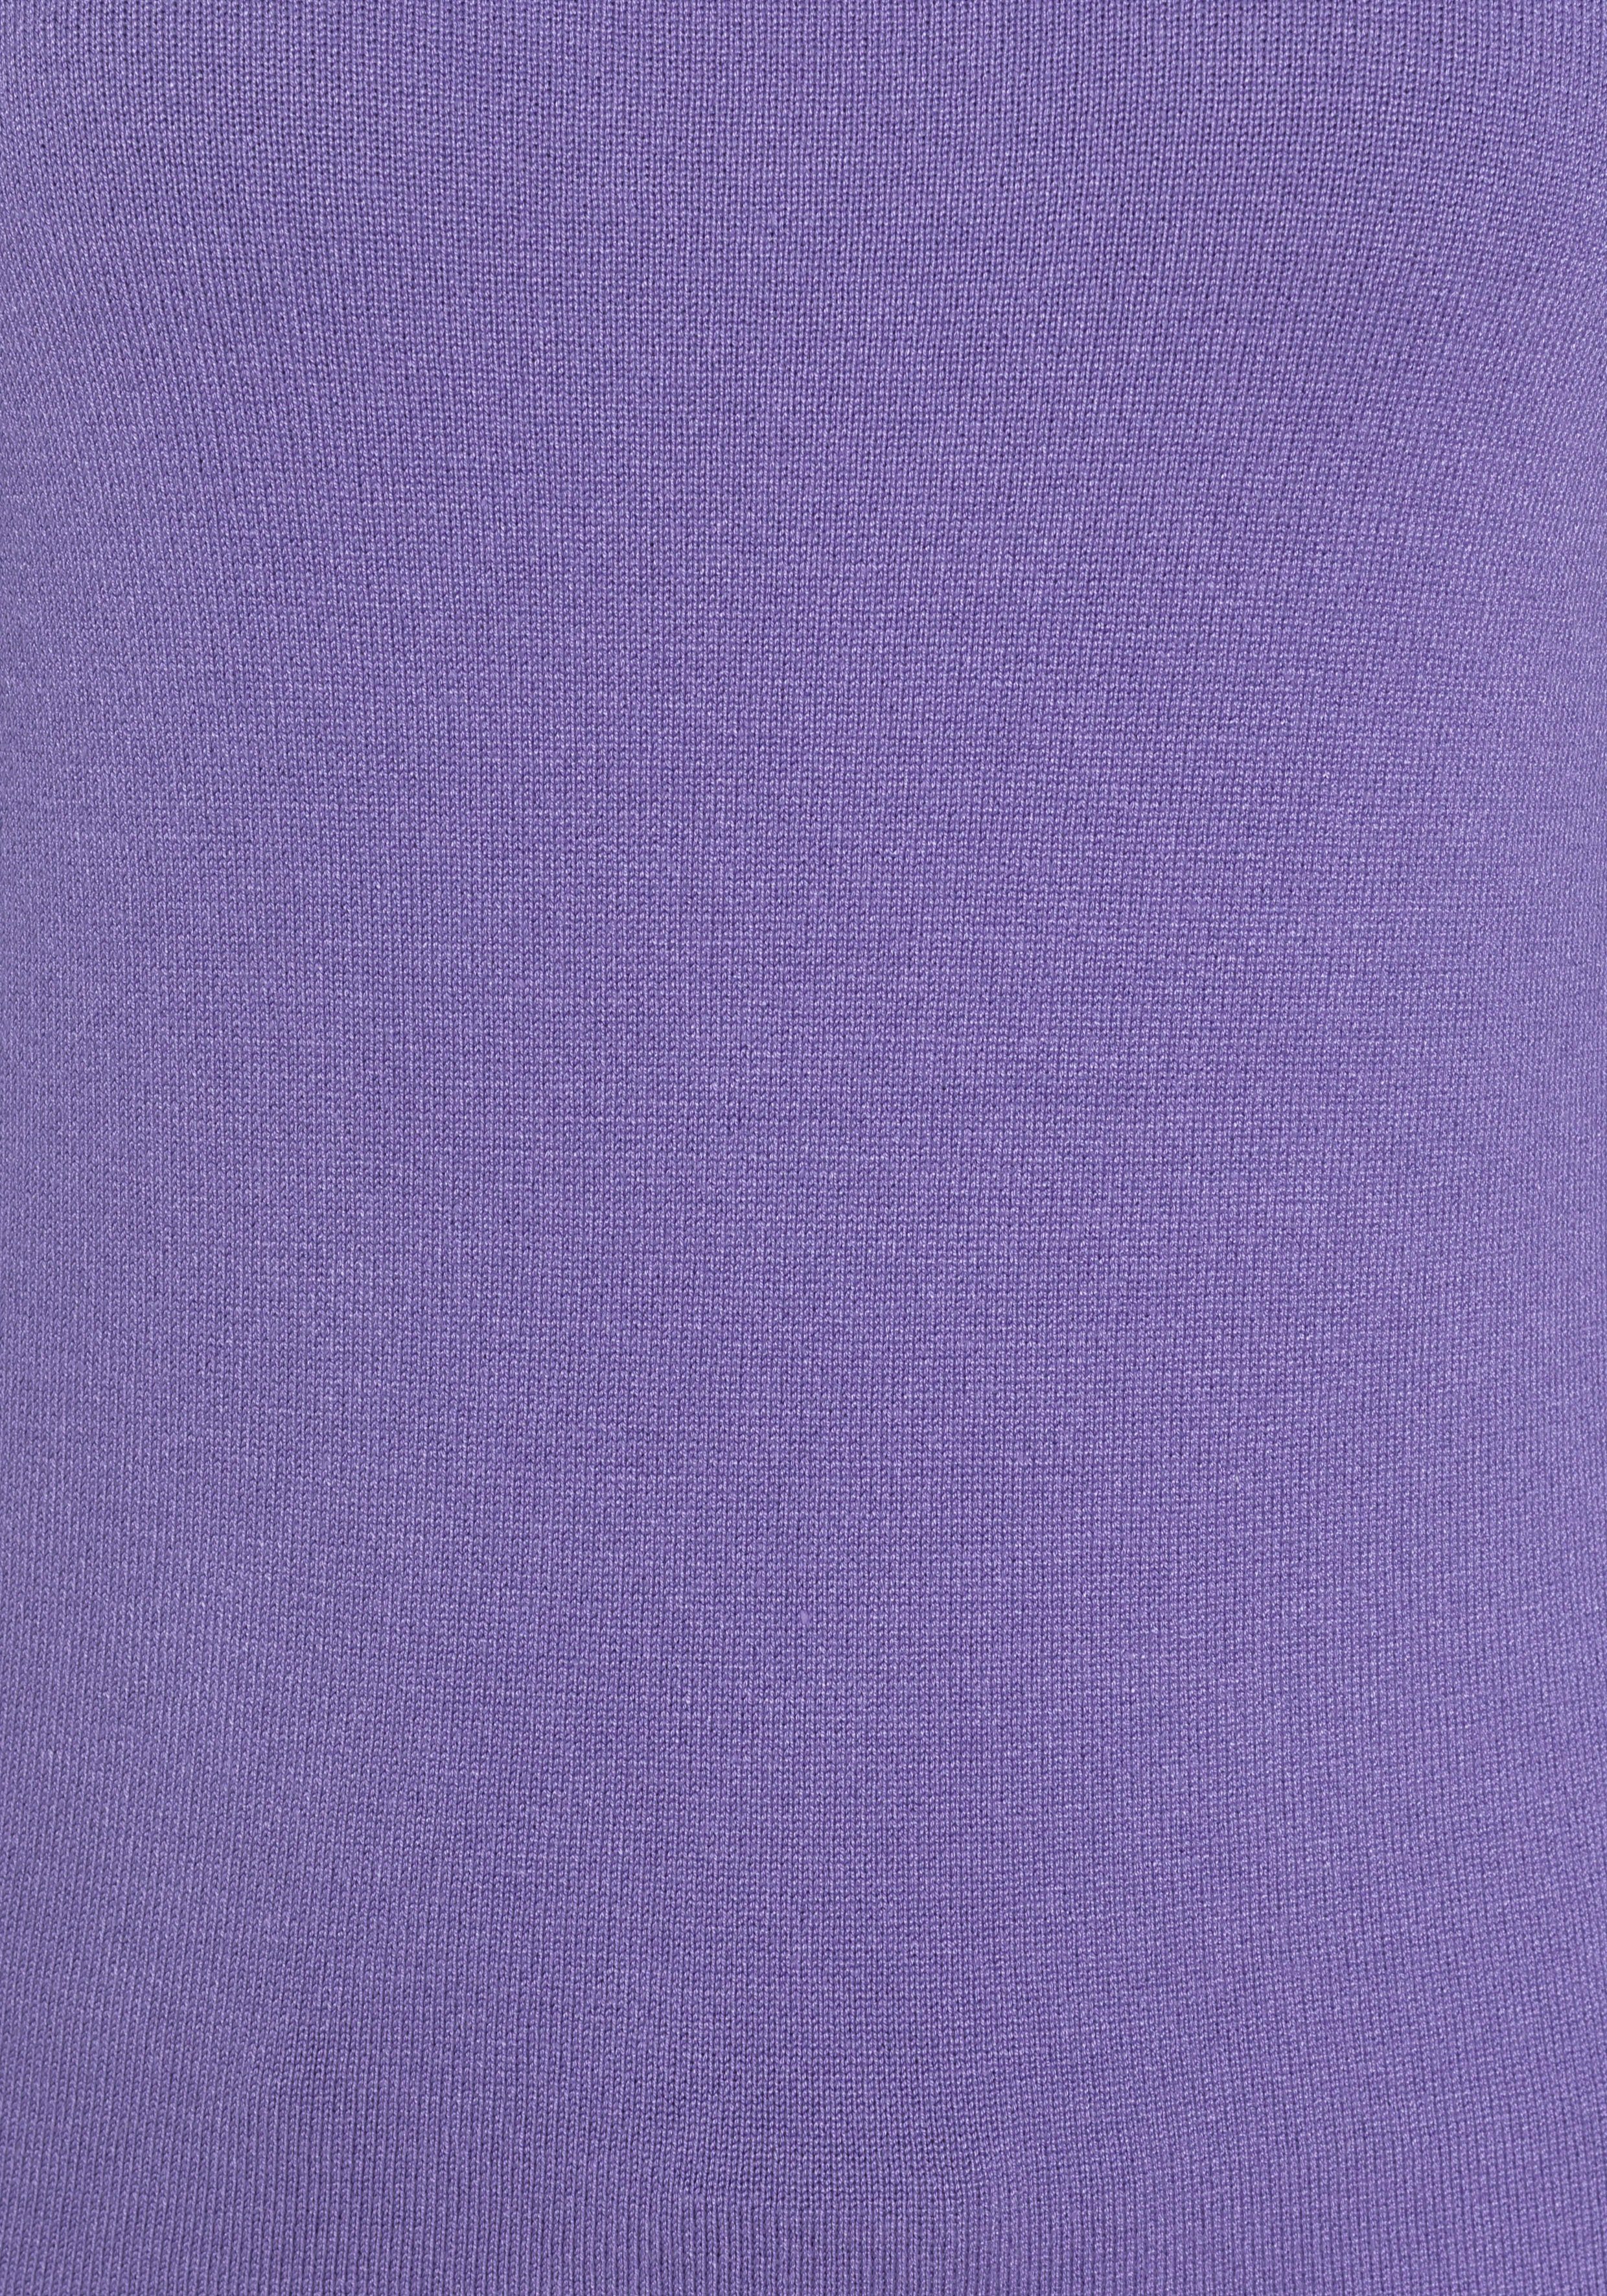 Rundhalspullover am TAILOR kontrastfarbenen und lila mit Details Knopfleiste Ärmelbündchen Team Polo TOM